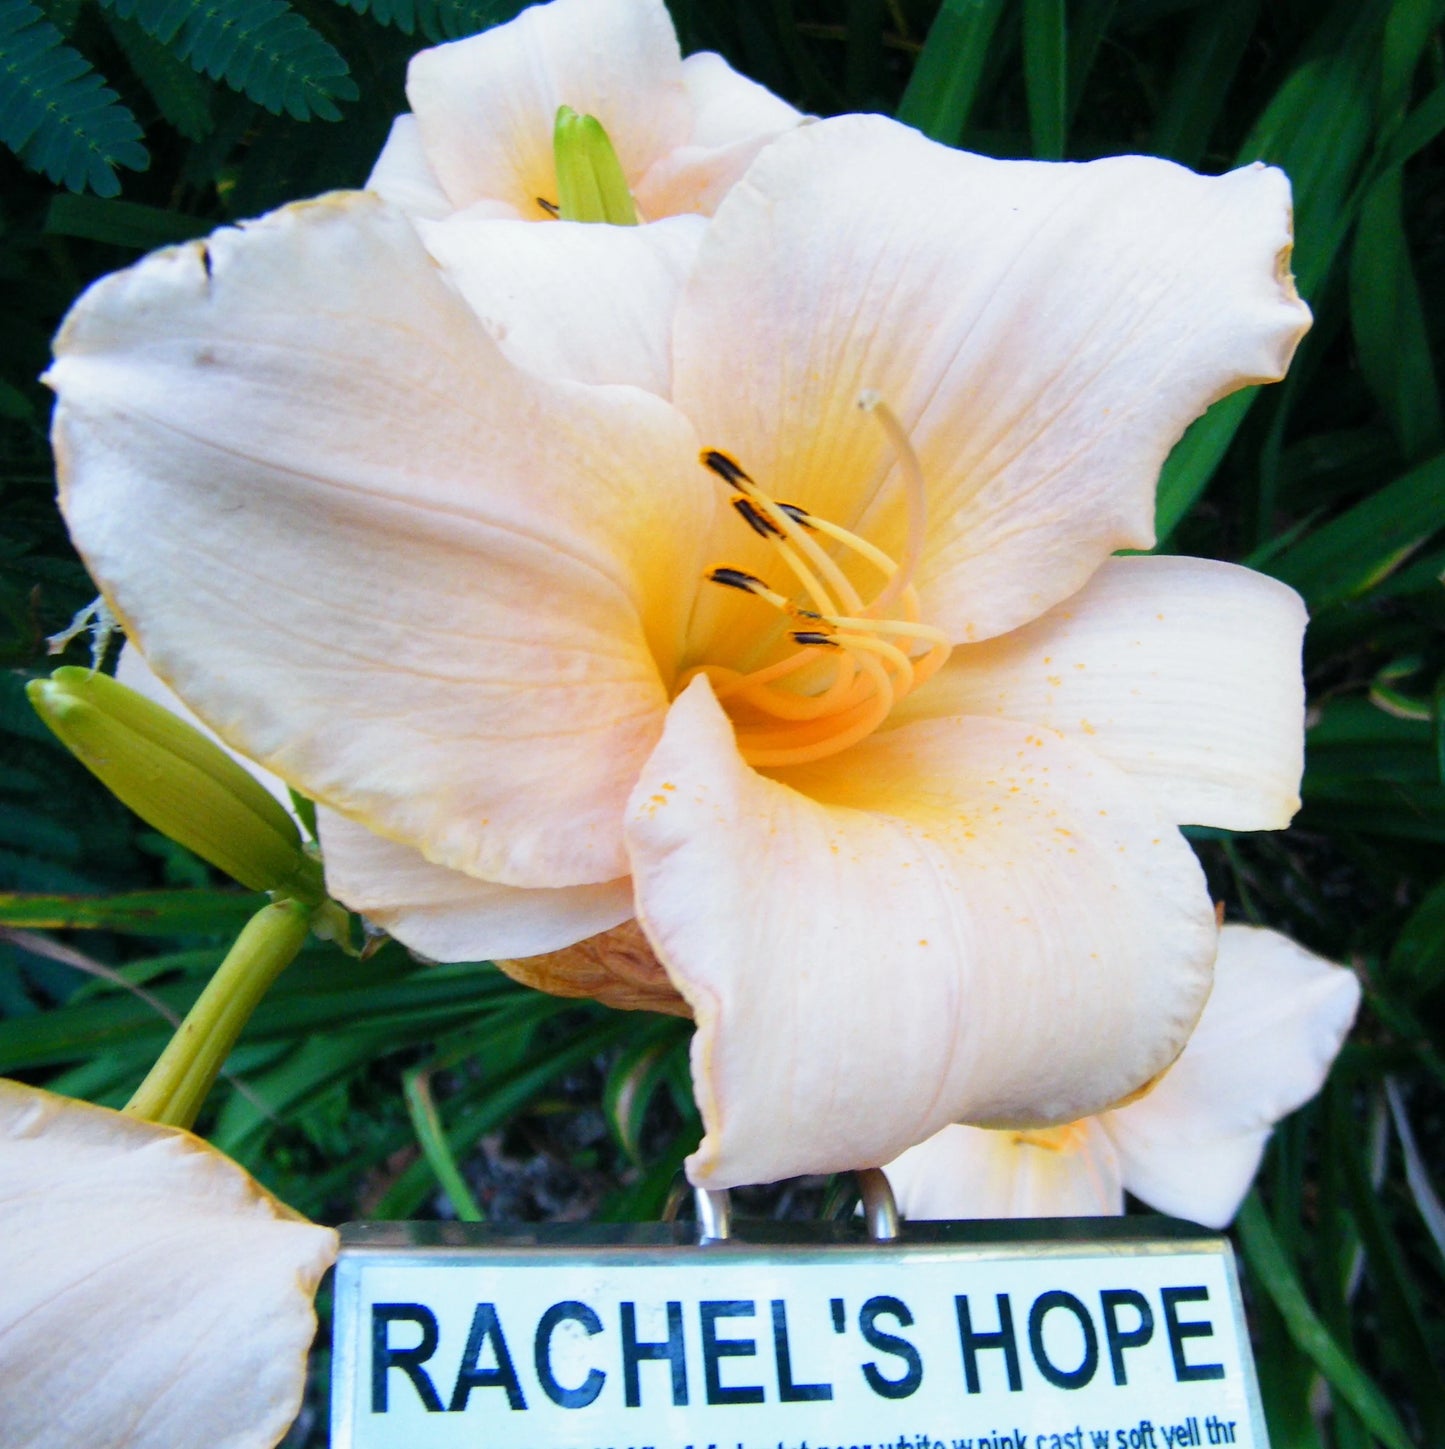 RACHEL'S HOPE